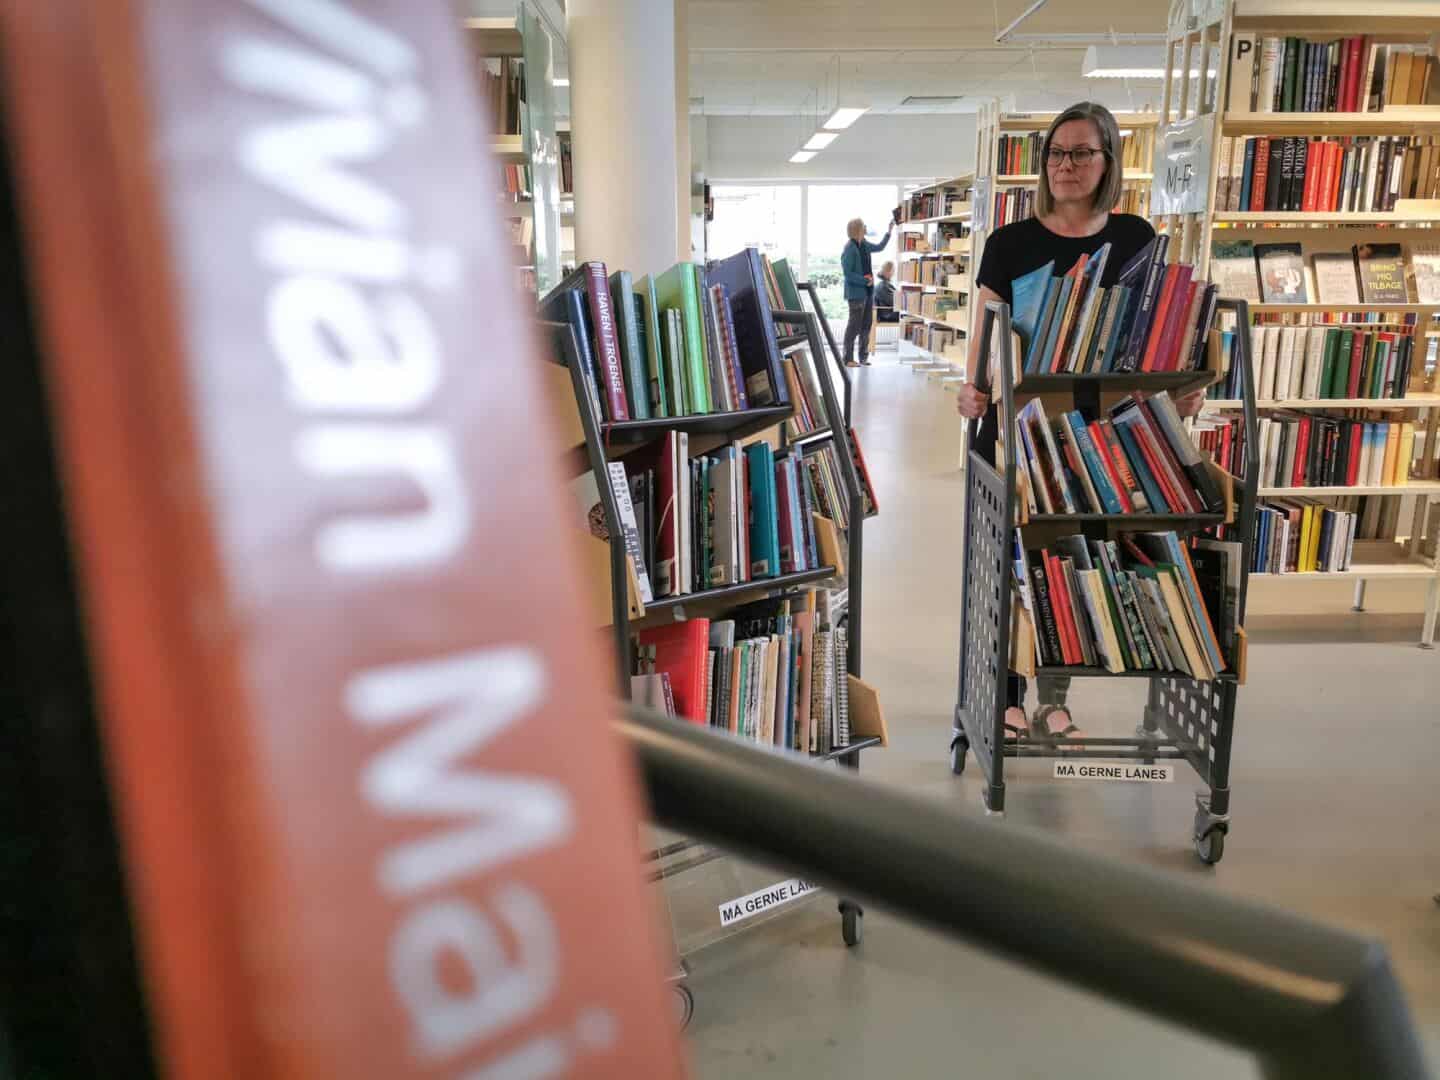 Takeaway med biblioteks-bøger succes: - Det er fantastisk viborg